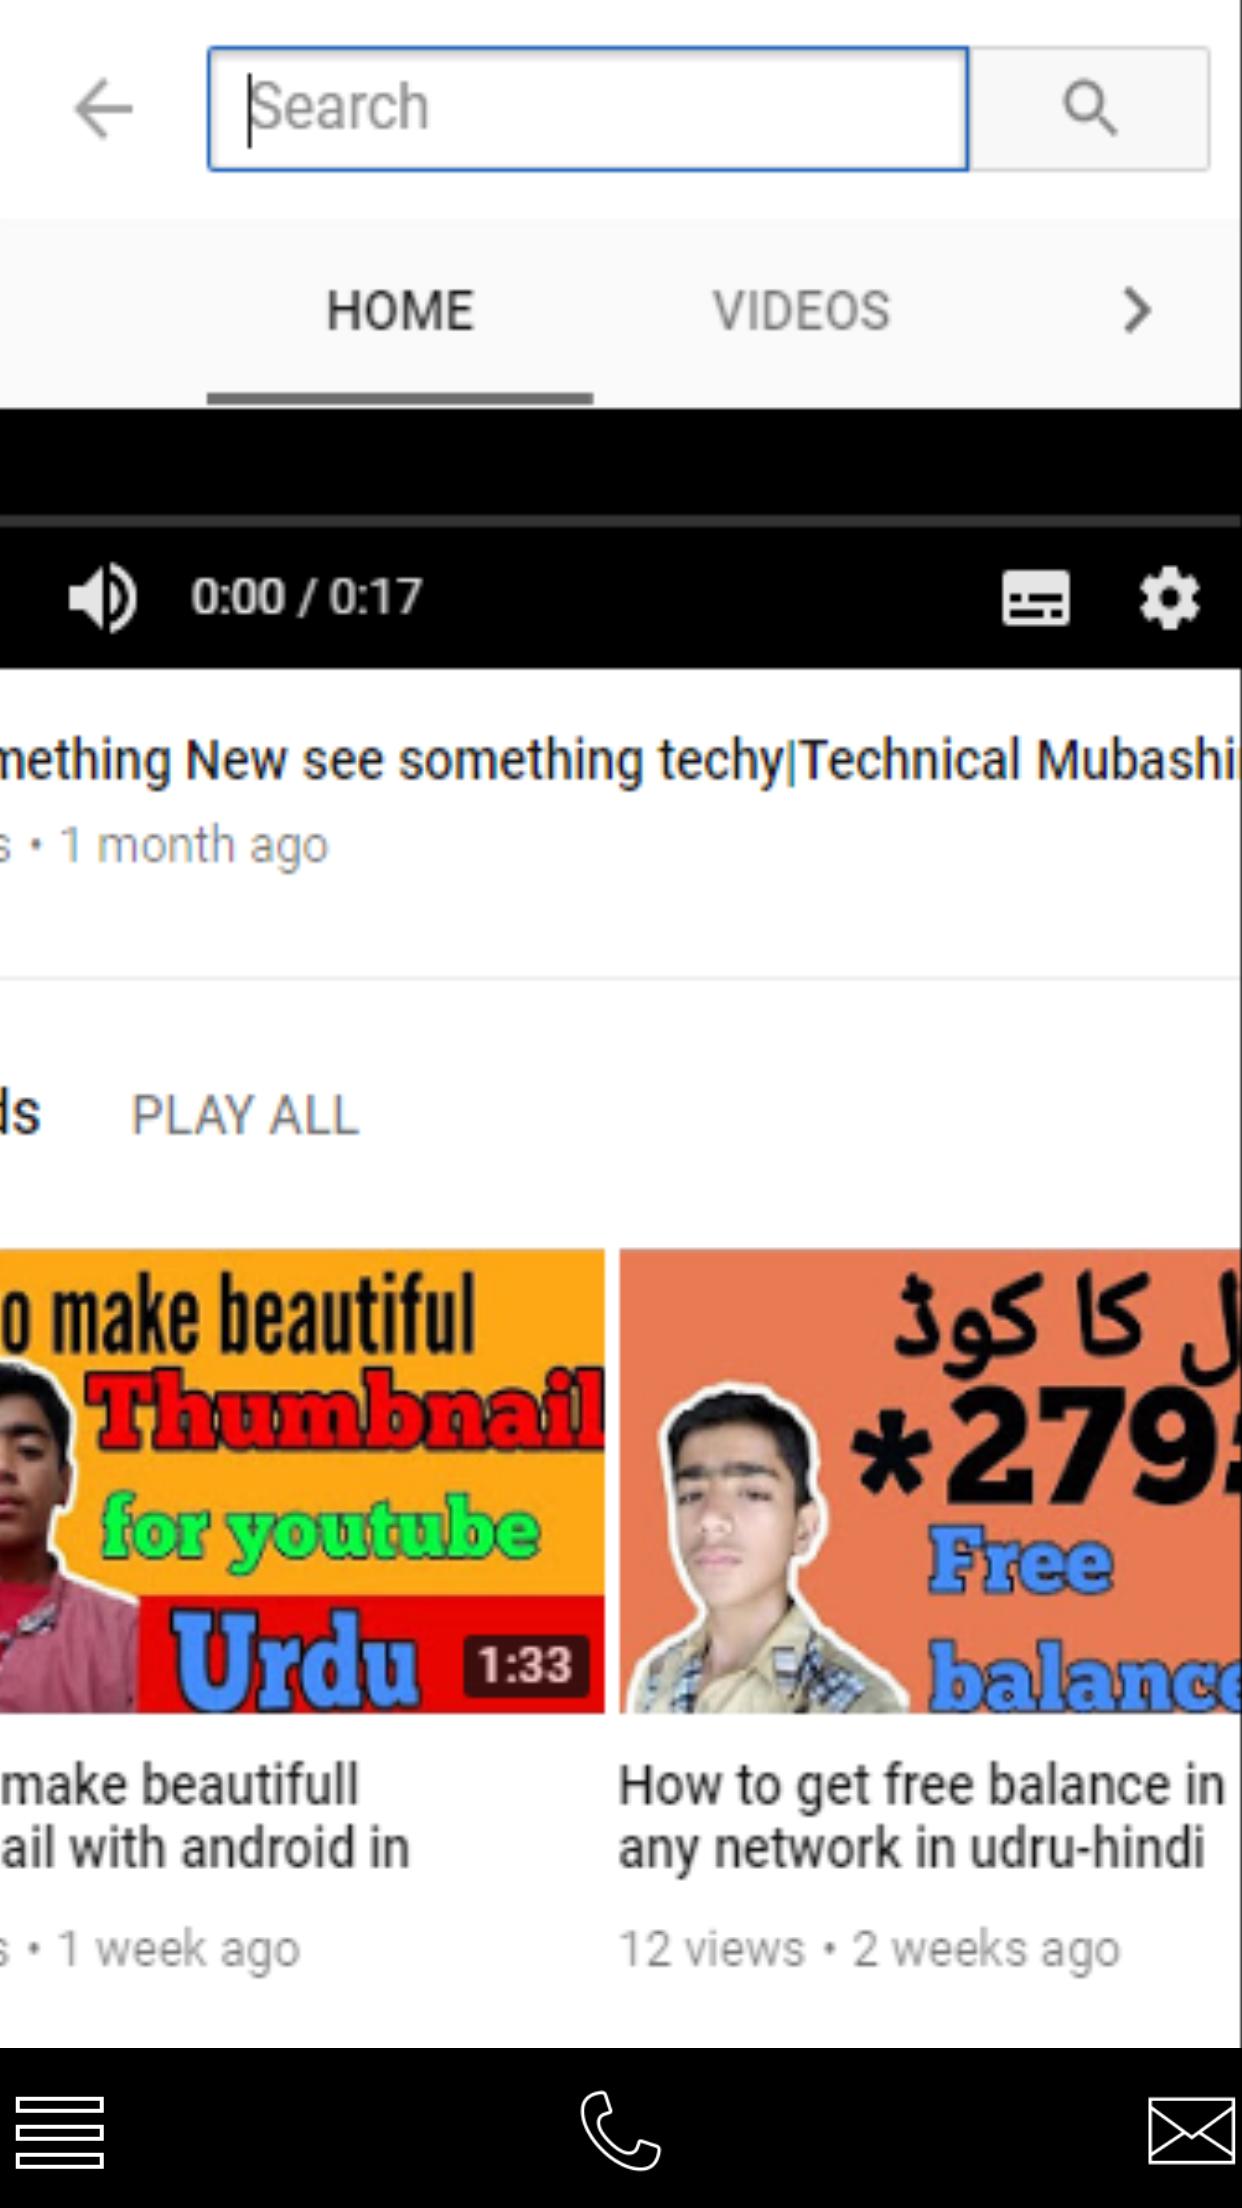 Techy urdu Technology Urdu